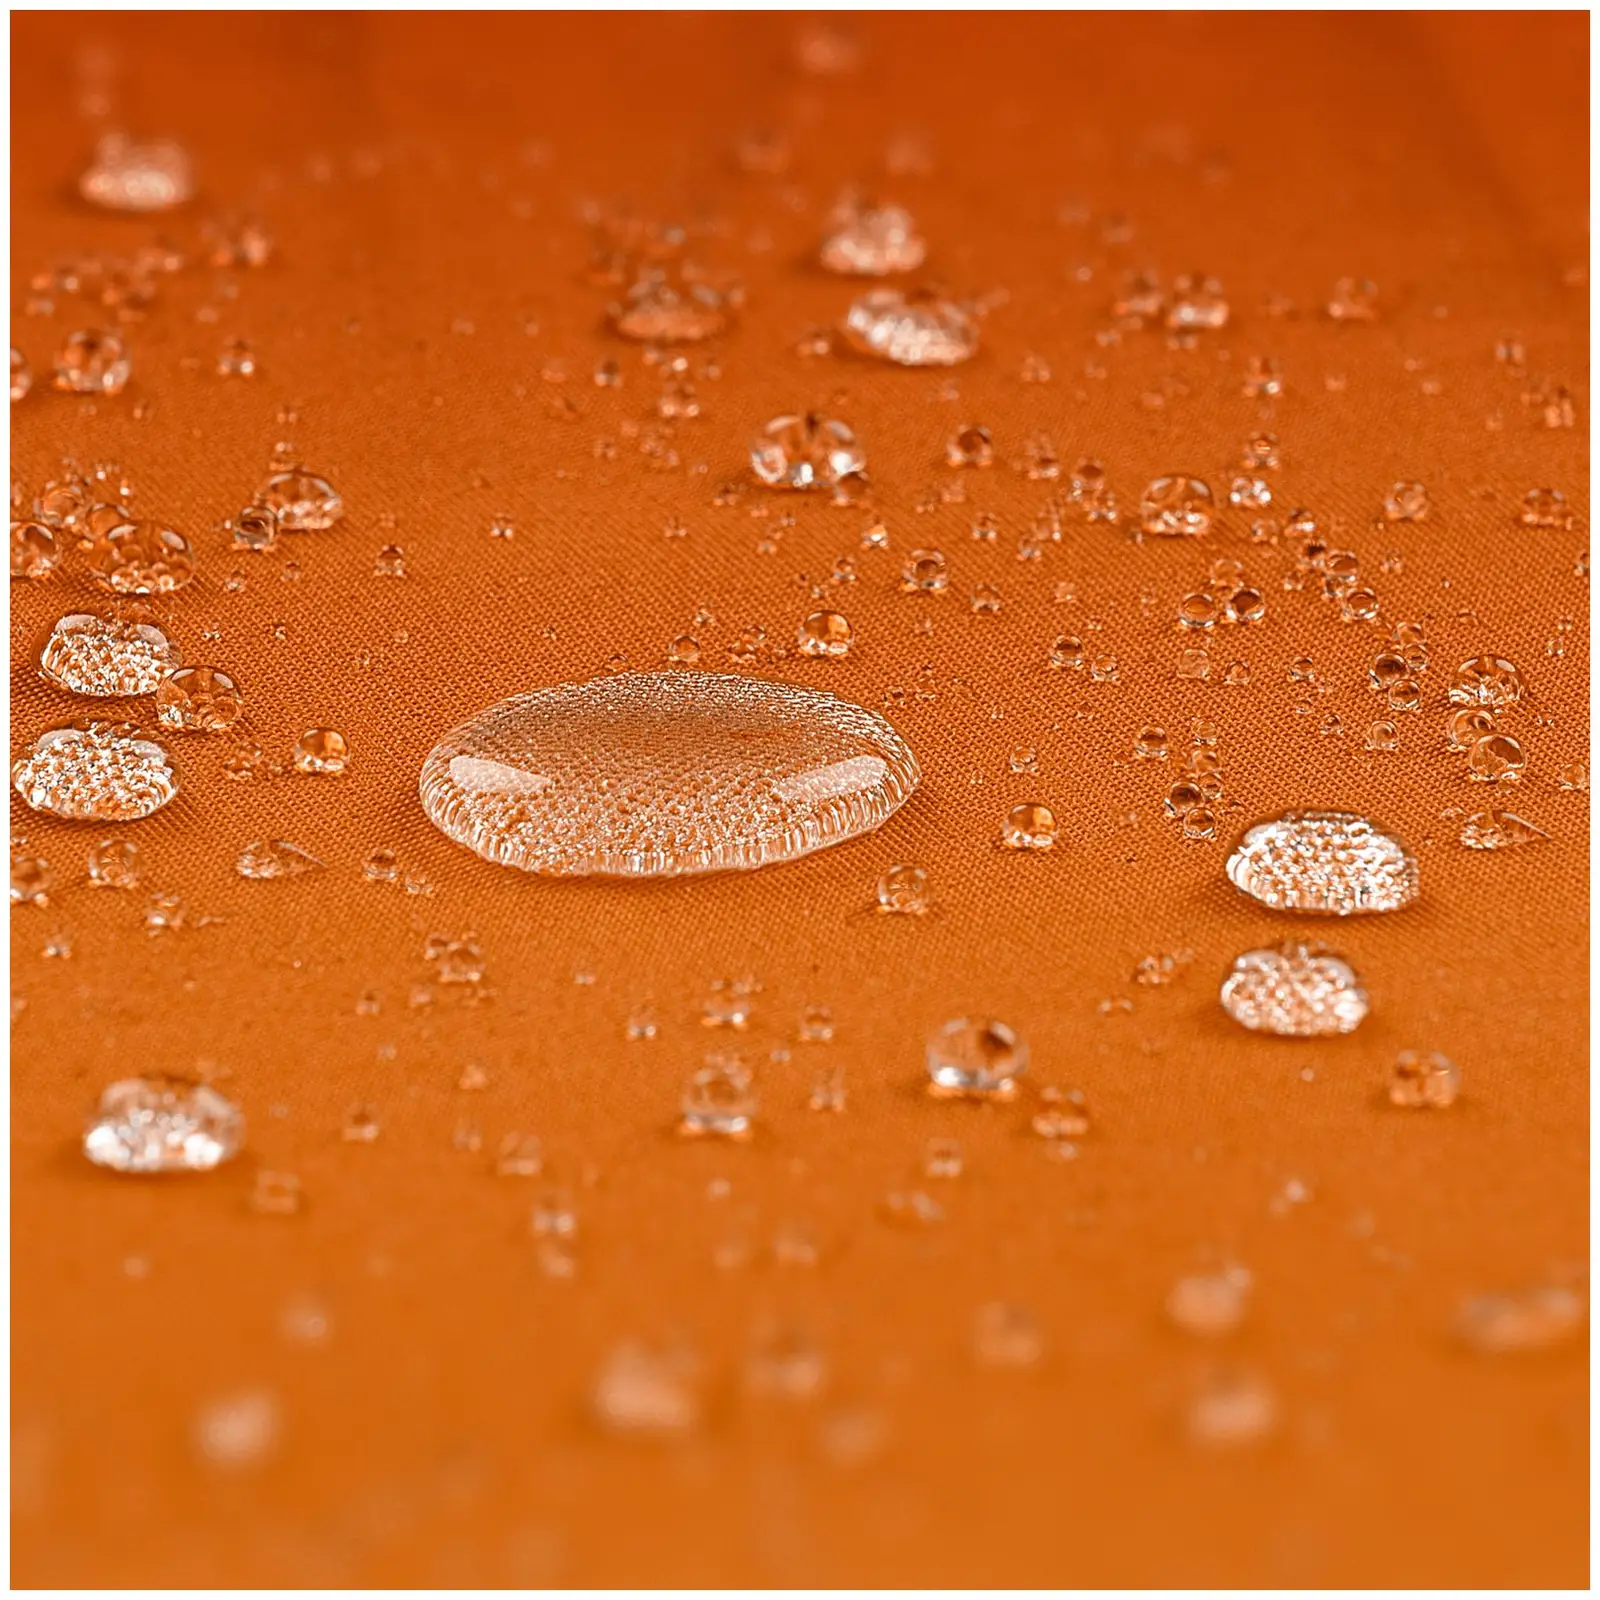 Andrahandssortering Hängparasoll - orange - runt - Ø 300 cm - kan lutas